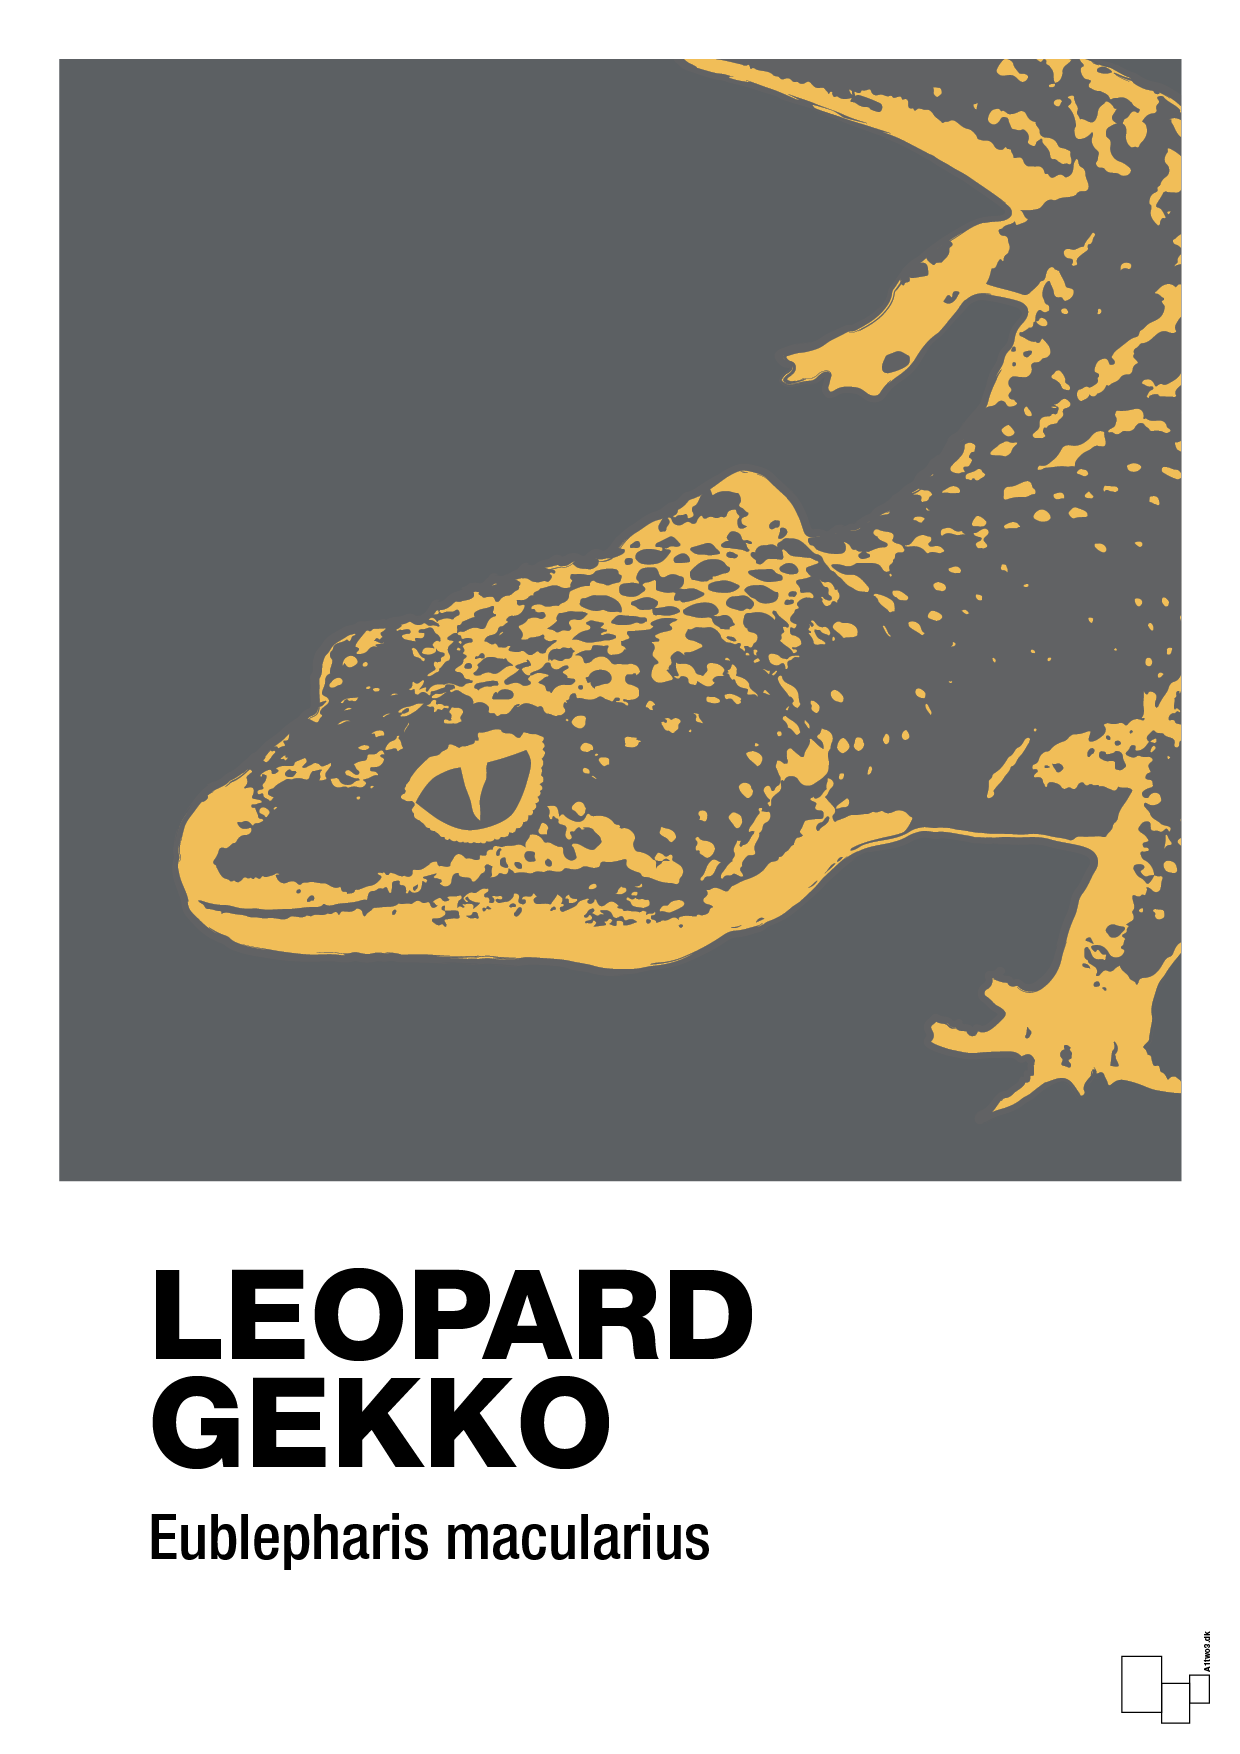 leopard gekko - Plakat med Videnskab i Graphic Charcoal